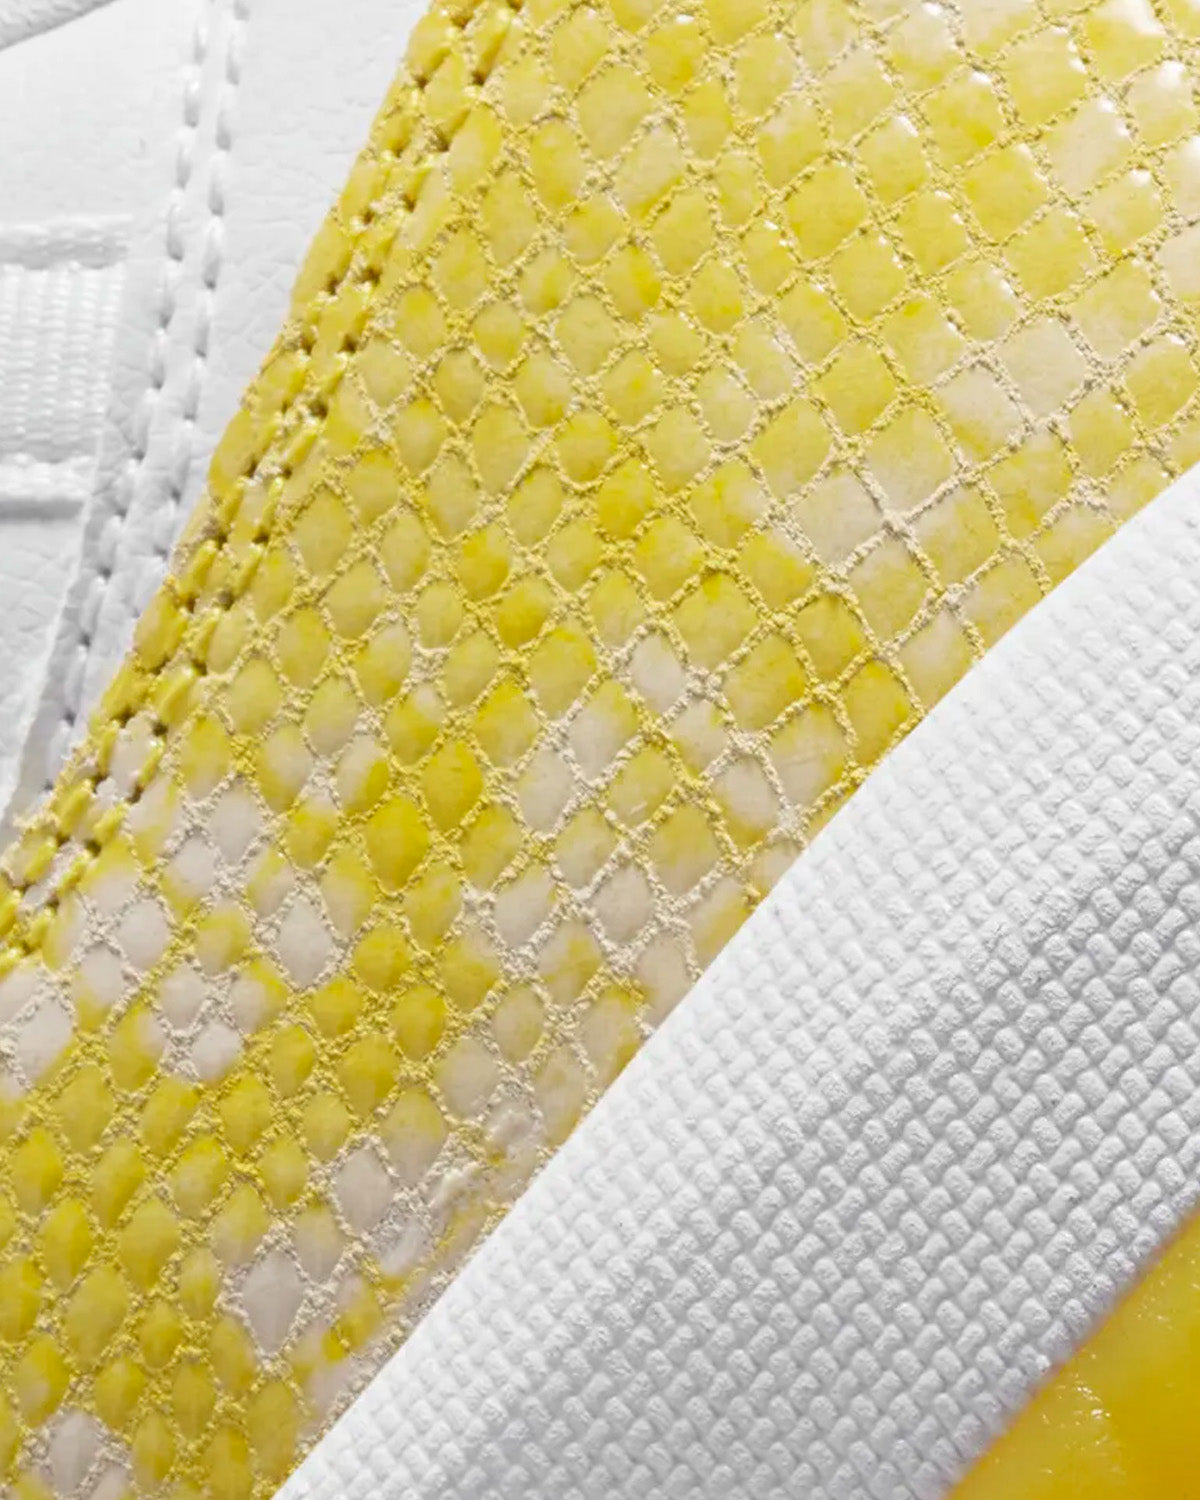 Jordan - Air Jordan 11 Yellow Snakeskin Low Top Sneakers